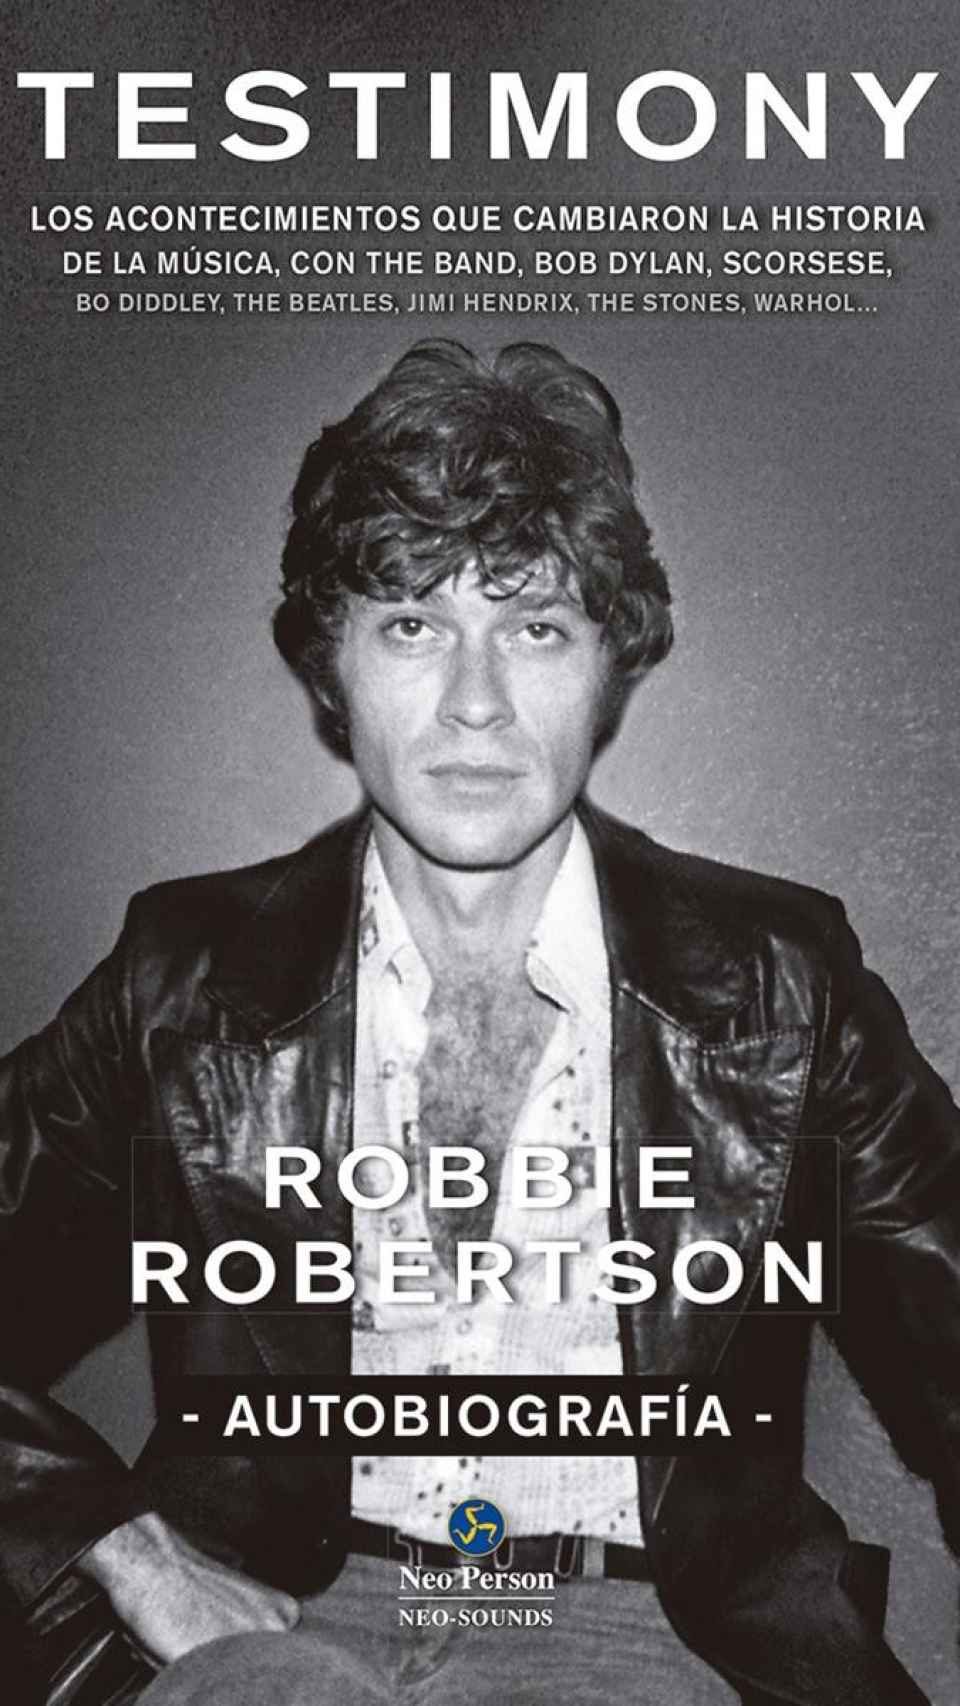 La biografía de Robbie Robertson